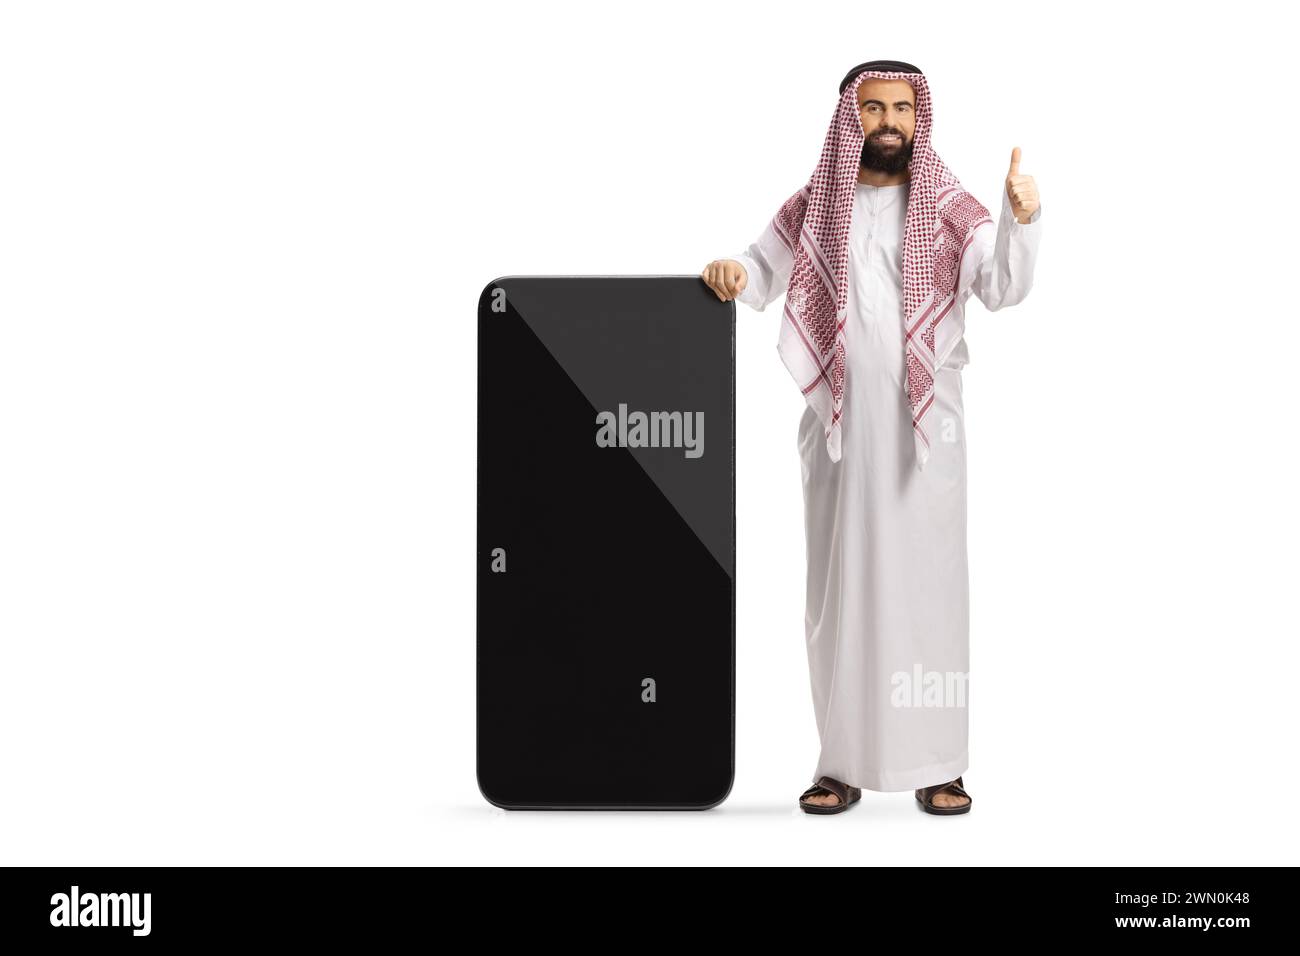 Uomo arabo saudita in abiti etnici appoggiato su un grande telefono cellulare e con gesti su un pollice isolato su sfondo bianco Foto Stock